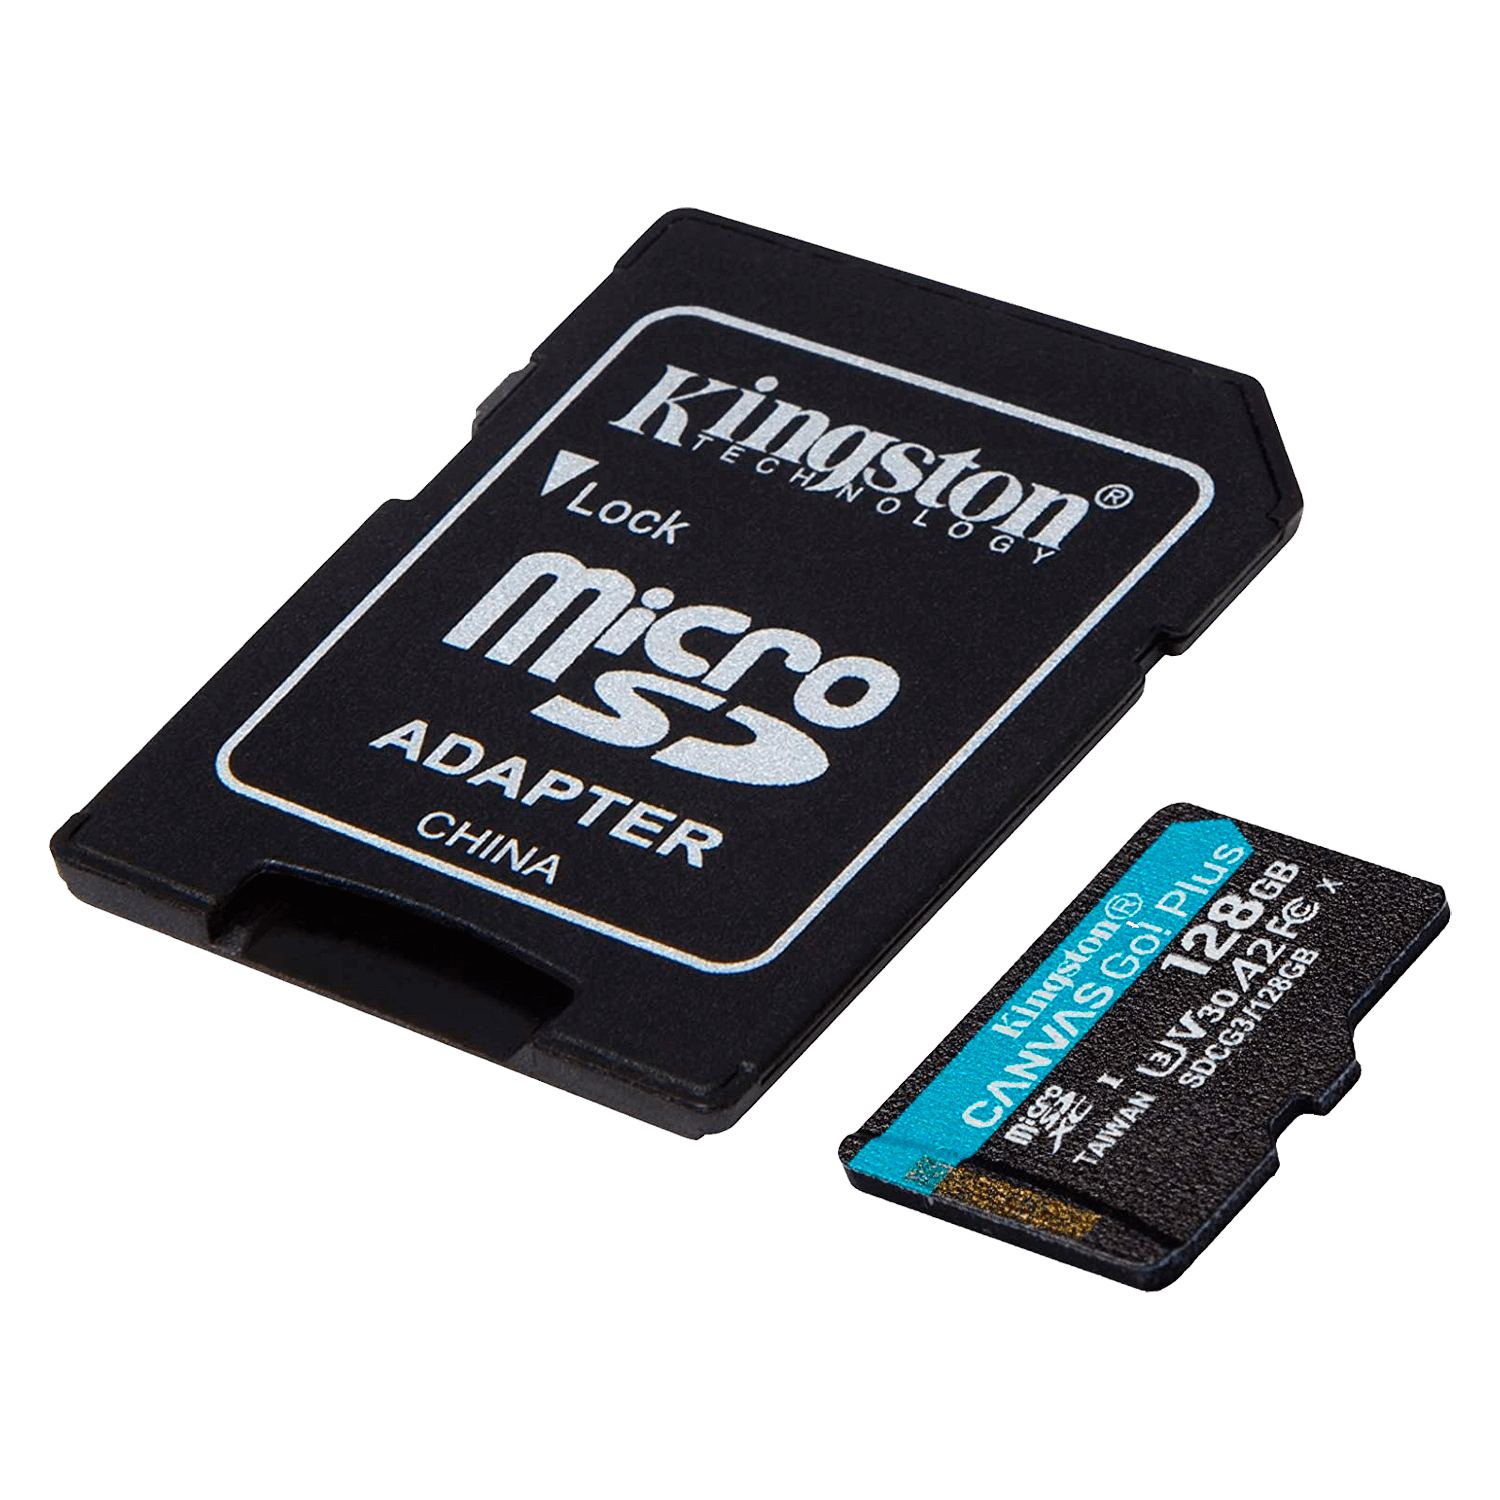 Cartão de Memória Micro SD Kingston U3 128GB / 170MBS / Canvas GO - (SDCG3/128GB)